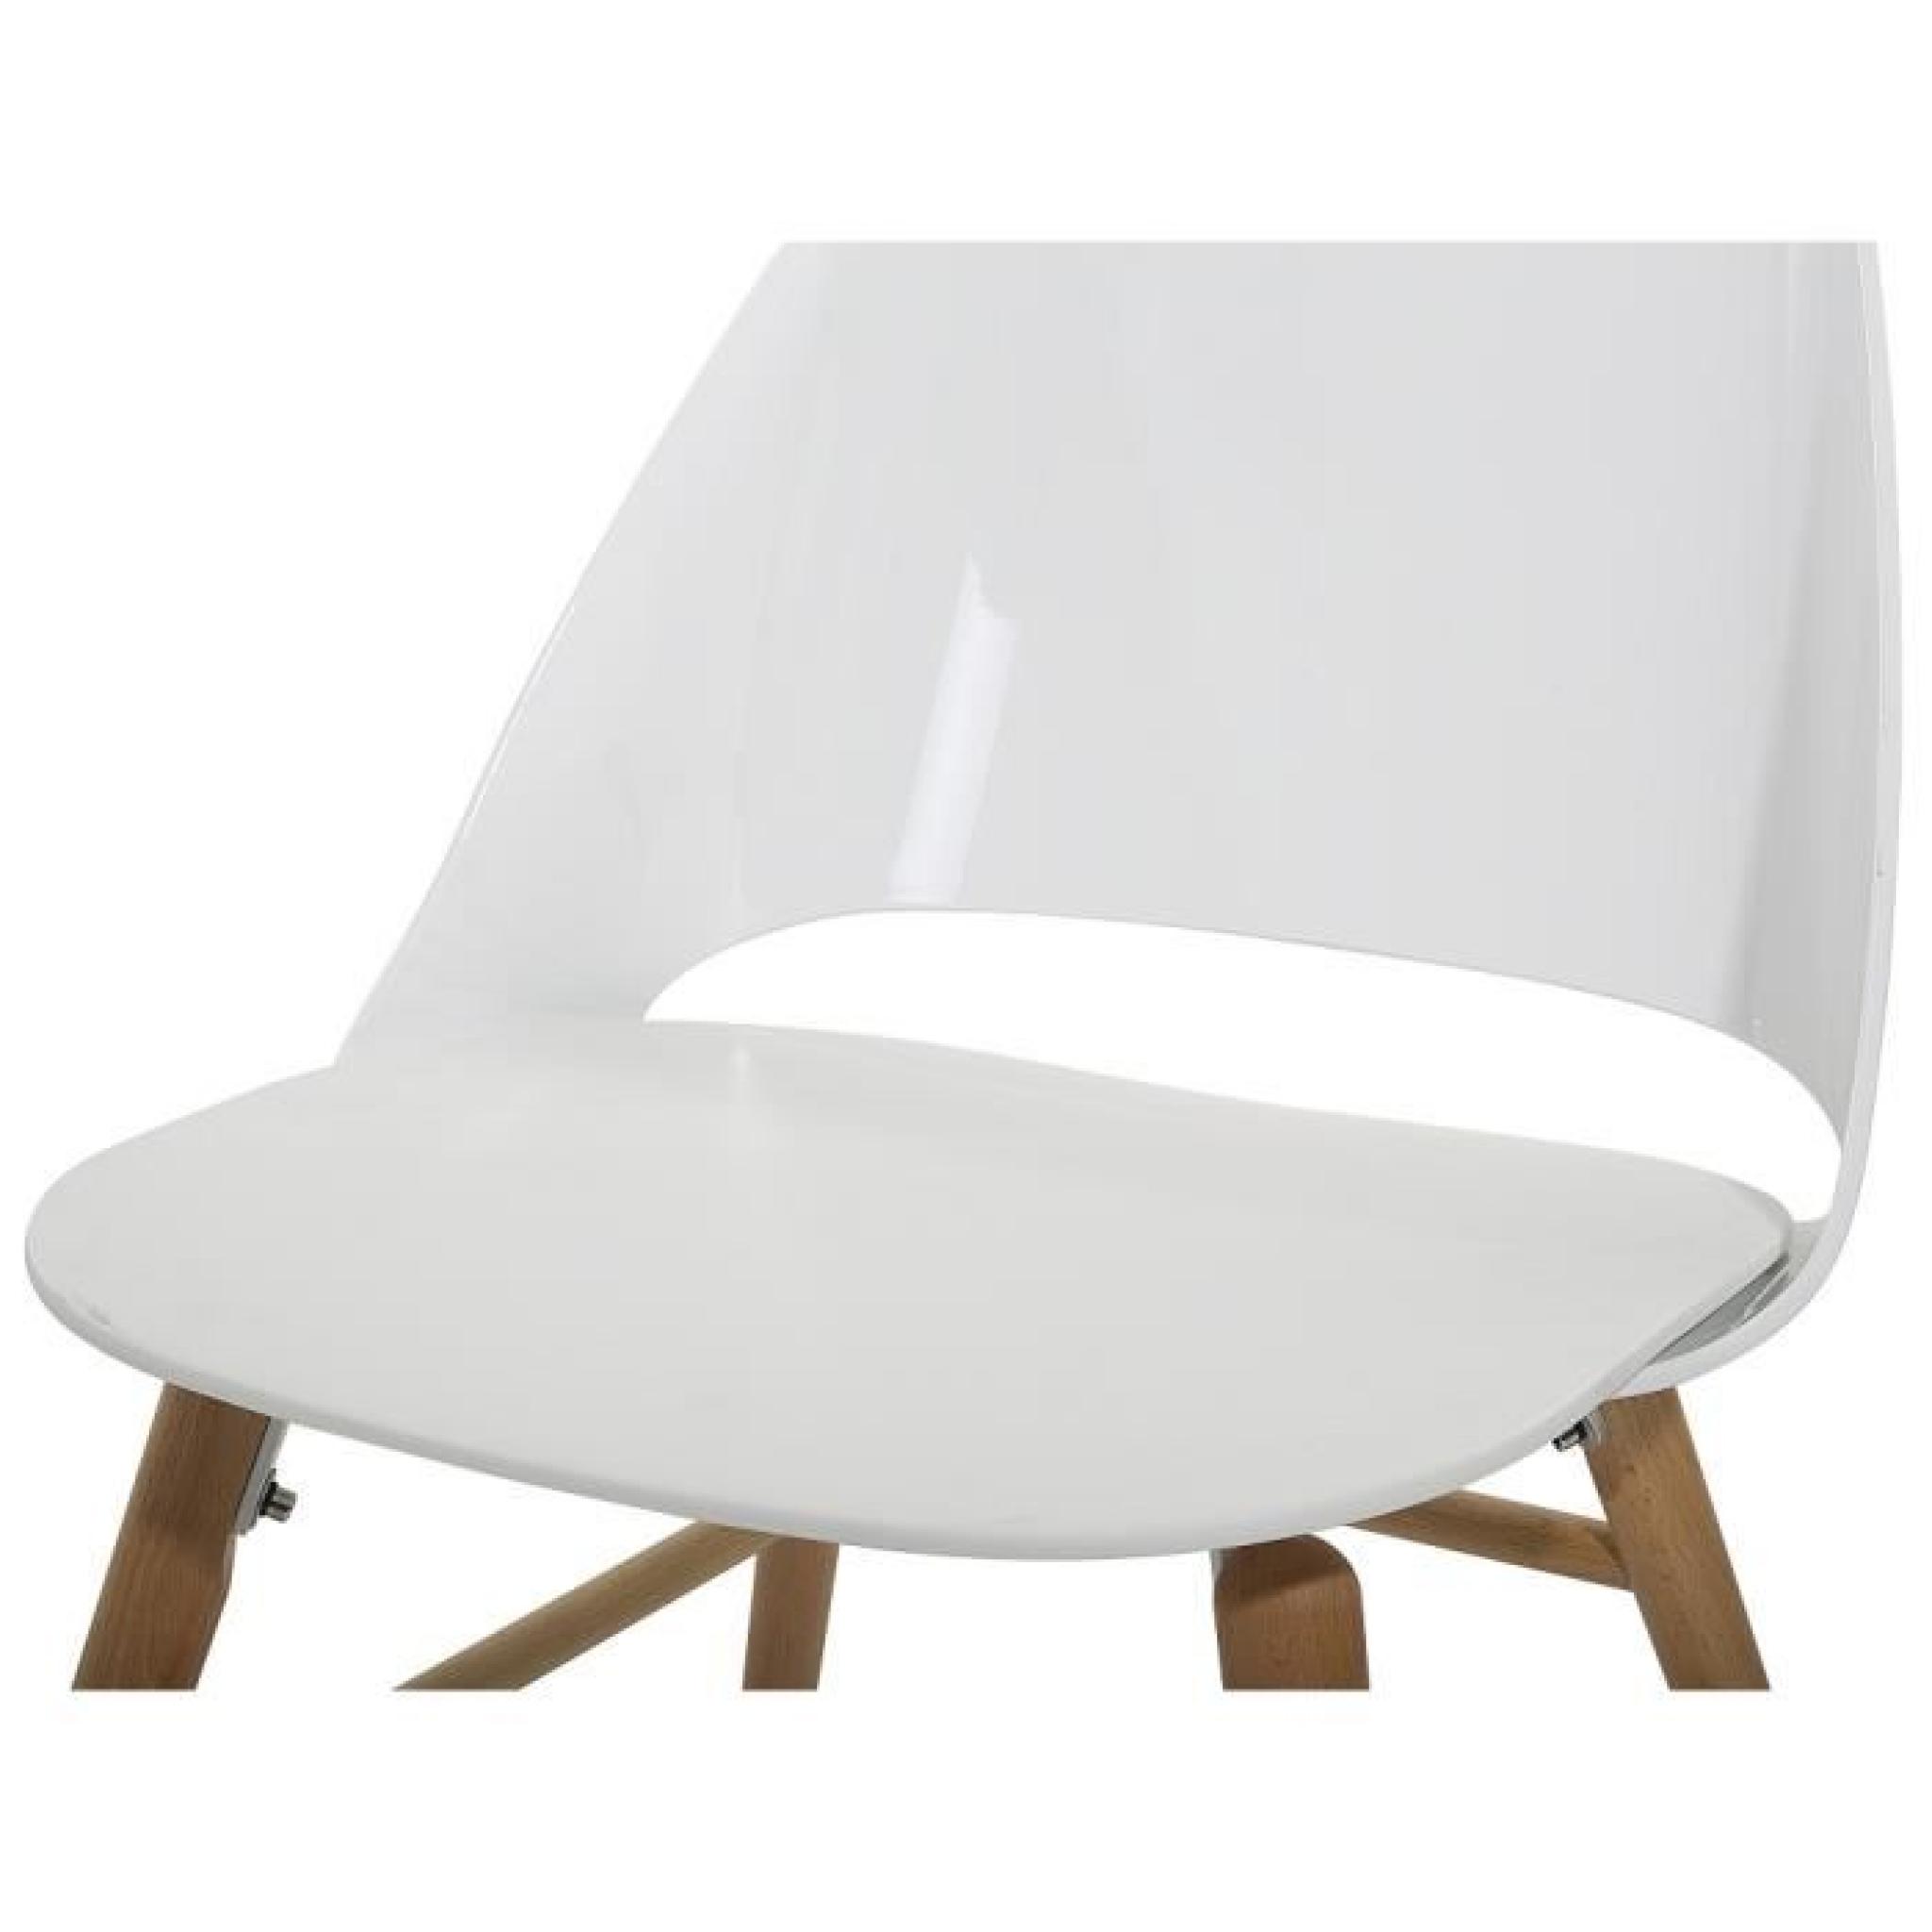 Chaise design - siège en plastique blanc - Milford pas cher